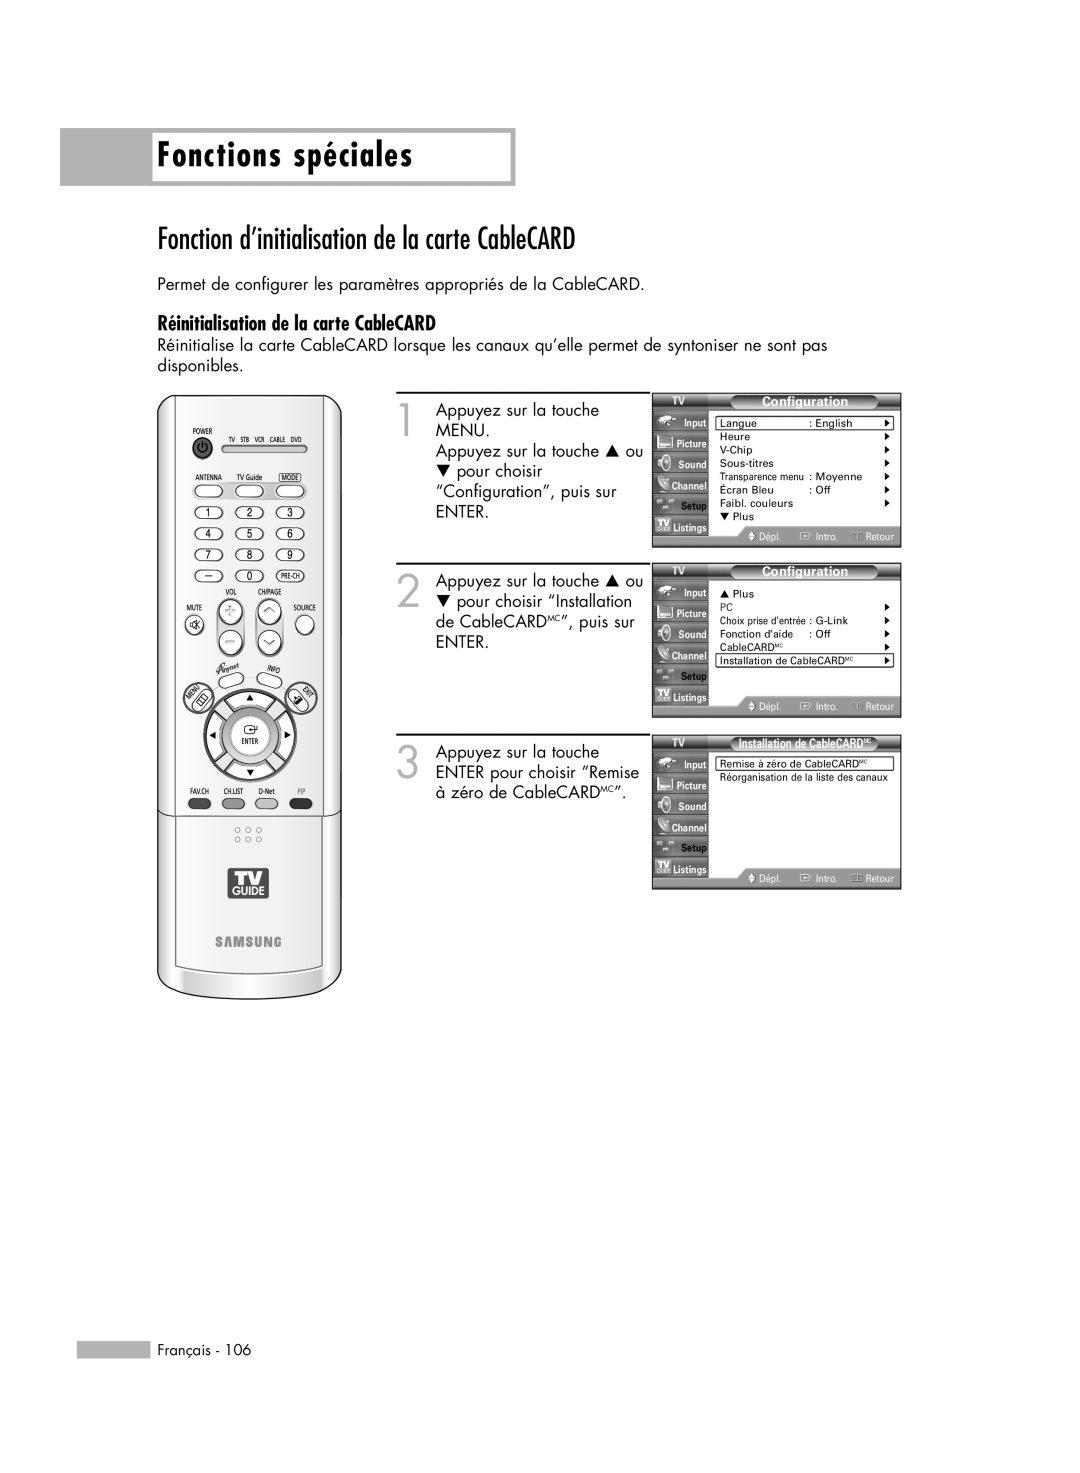 Samsung HL-R5678W Fonction d’initialisation de la carte CableCARD, Réinitialisation de la carte CableCARD, Français, Dépl 